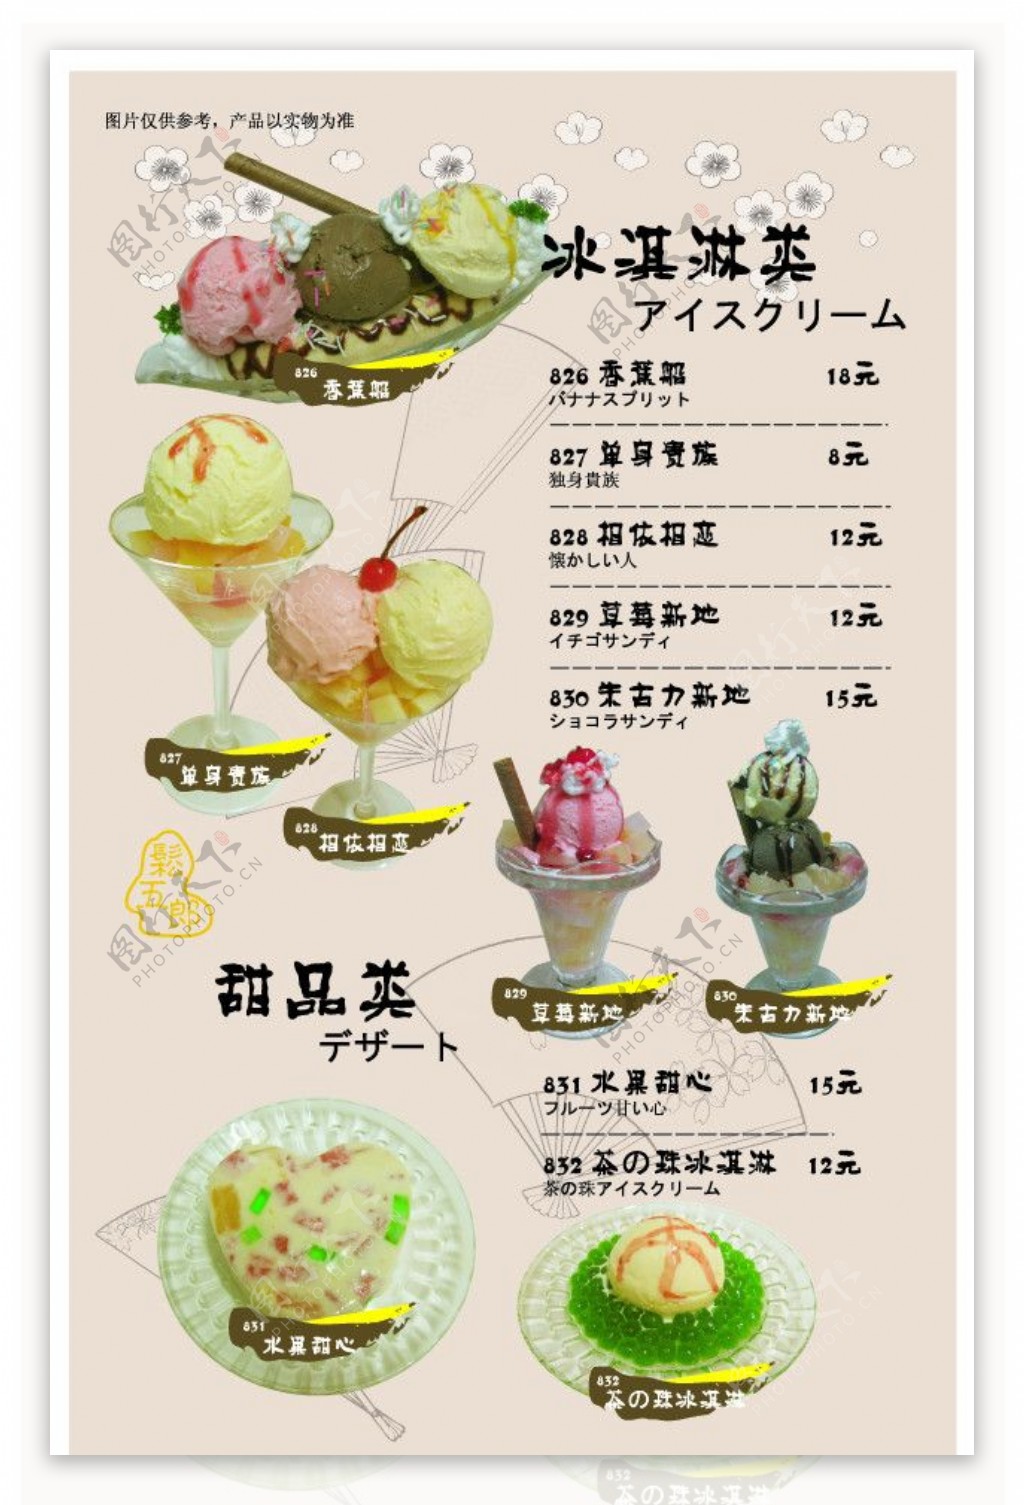 长野拉面菜谱冰淇淋类图片